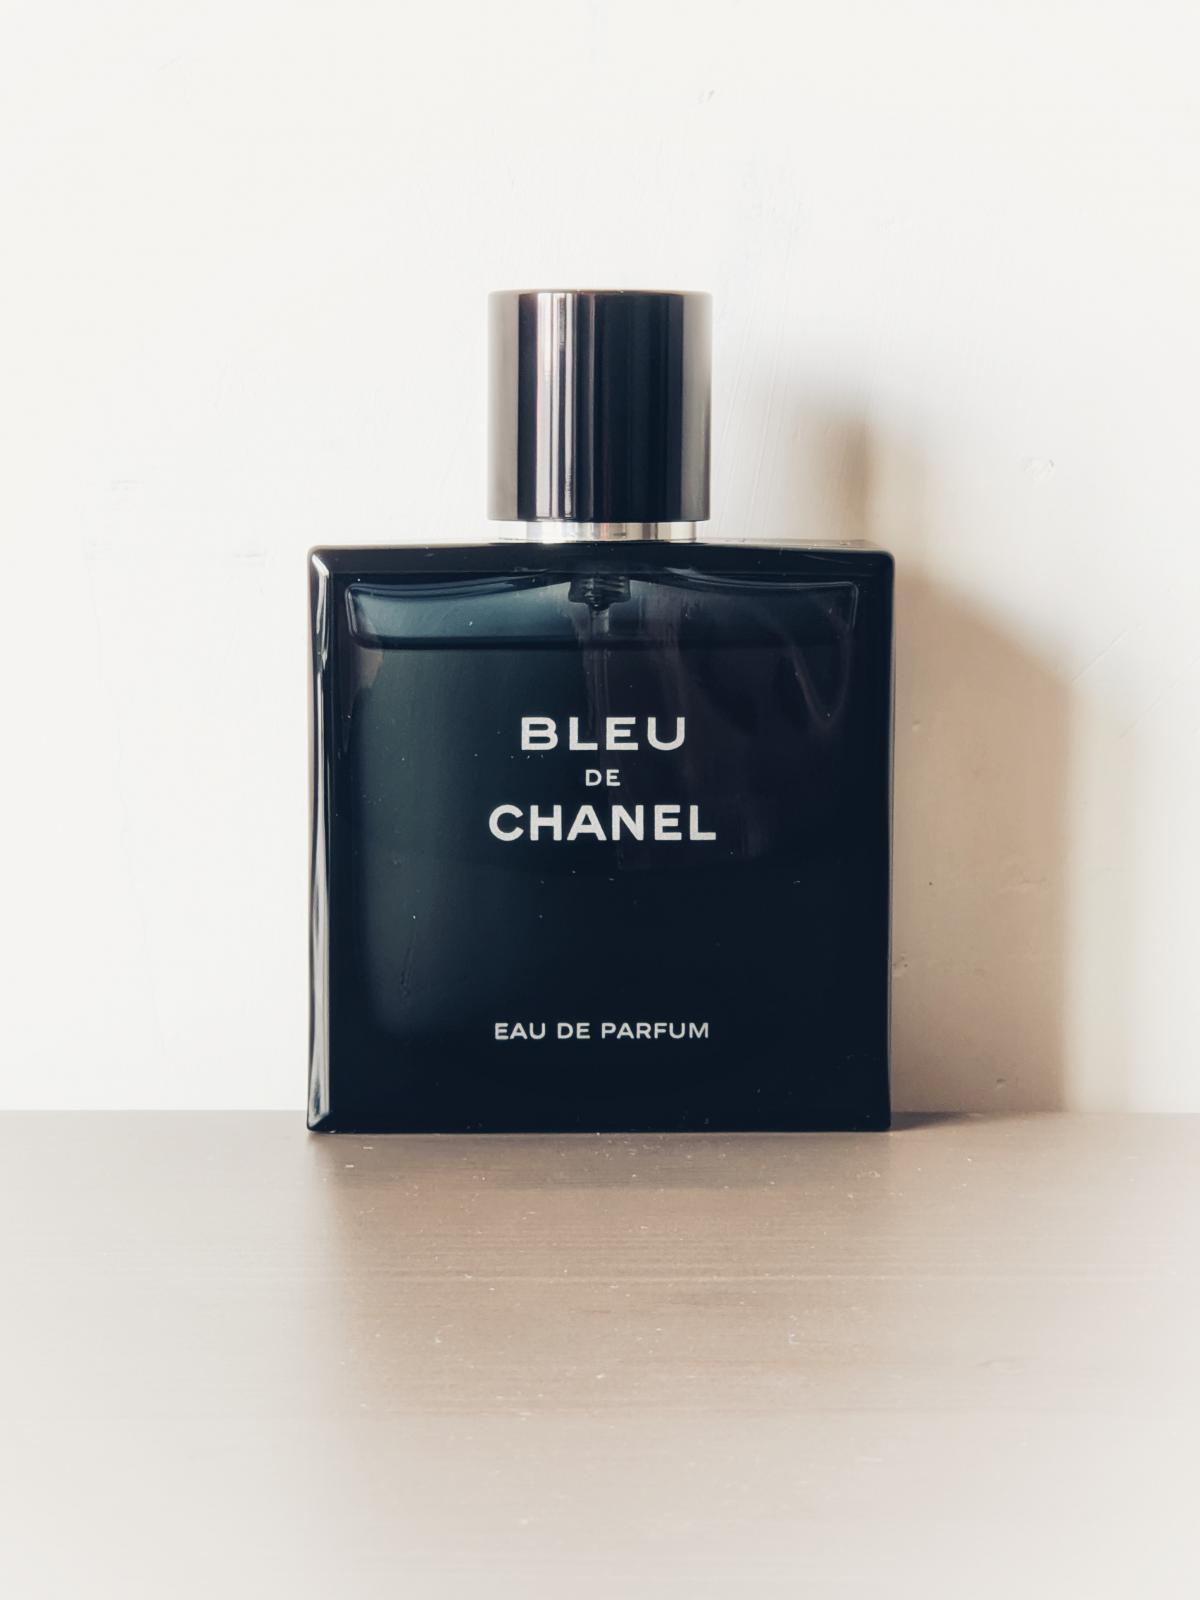 Bleu de Chanel Eau de Parfum Chanel Cologne - un parfum pour homme 2014